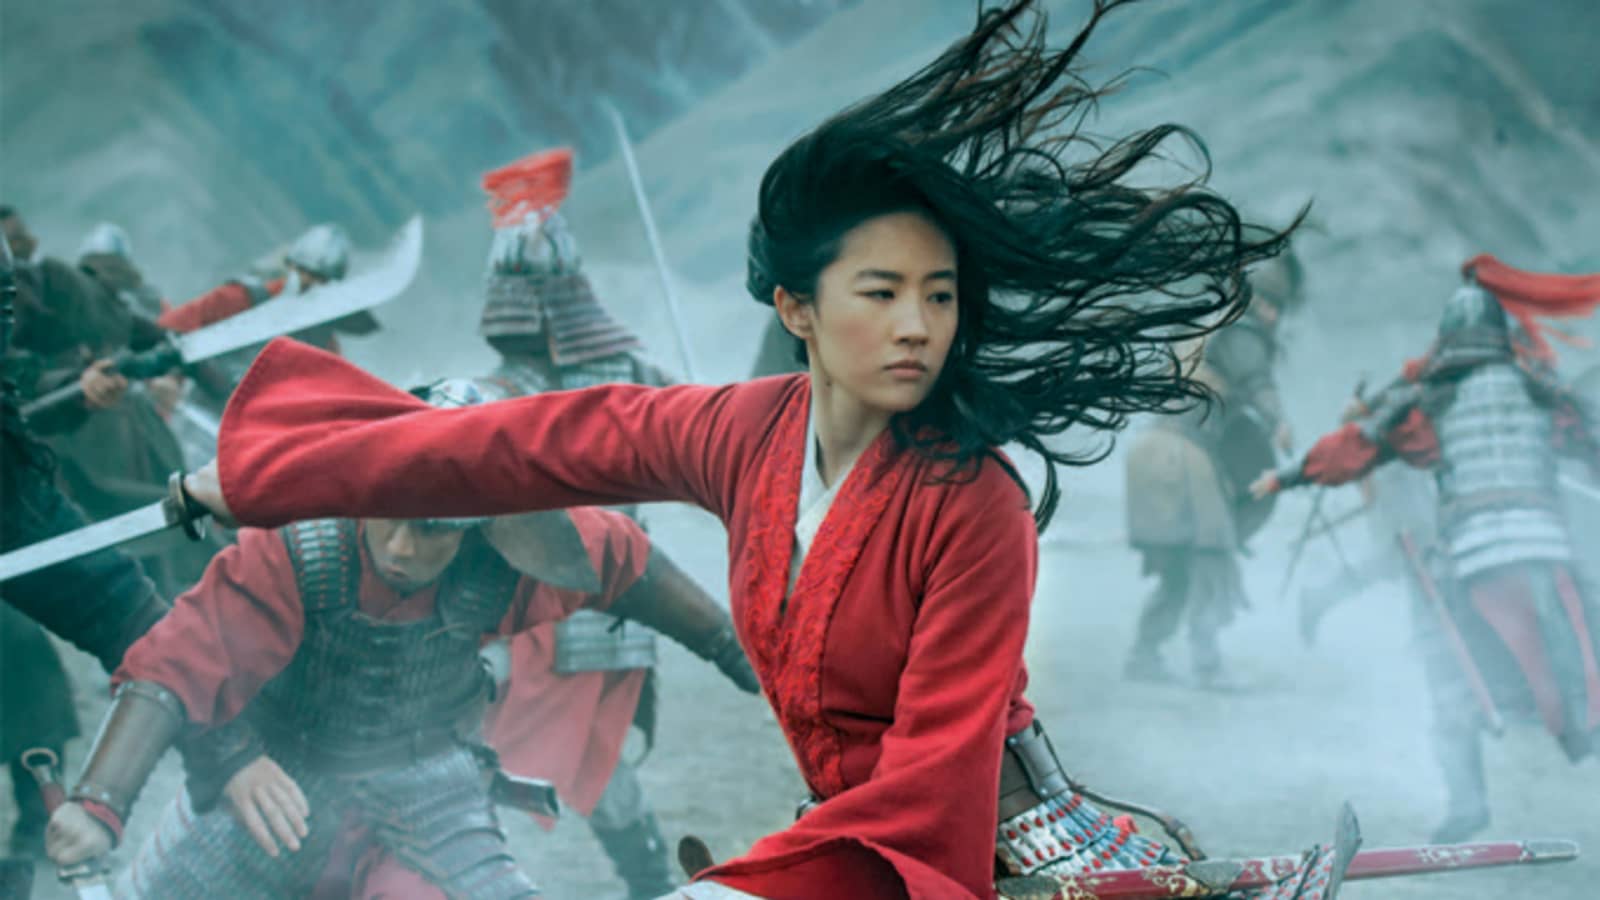 China bars media coverage of Disney's 'Mulan' after Xinjiang backlash